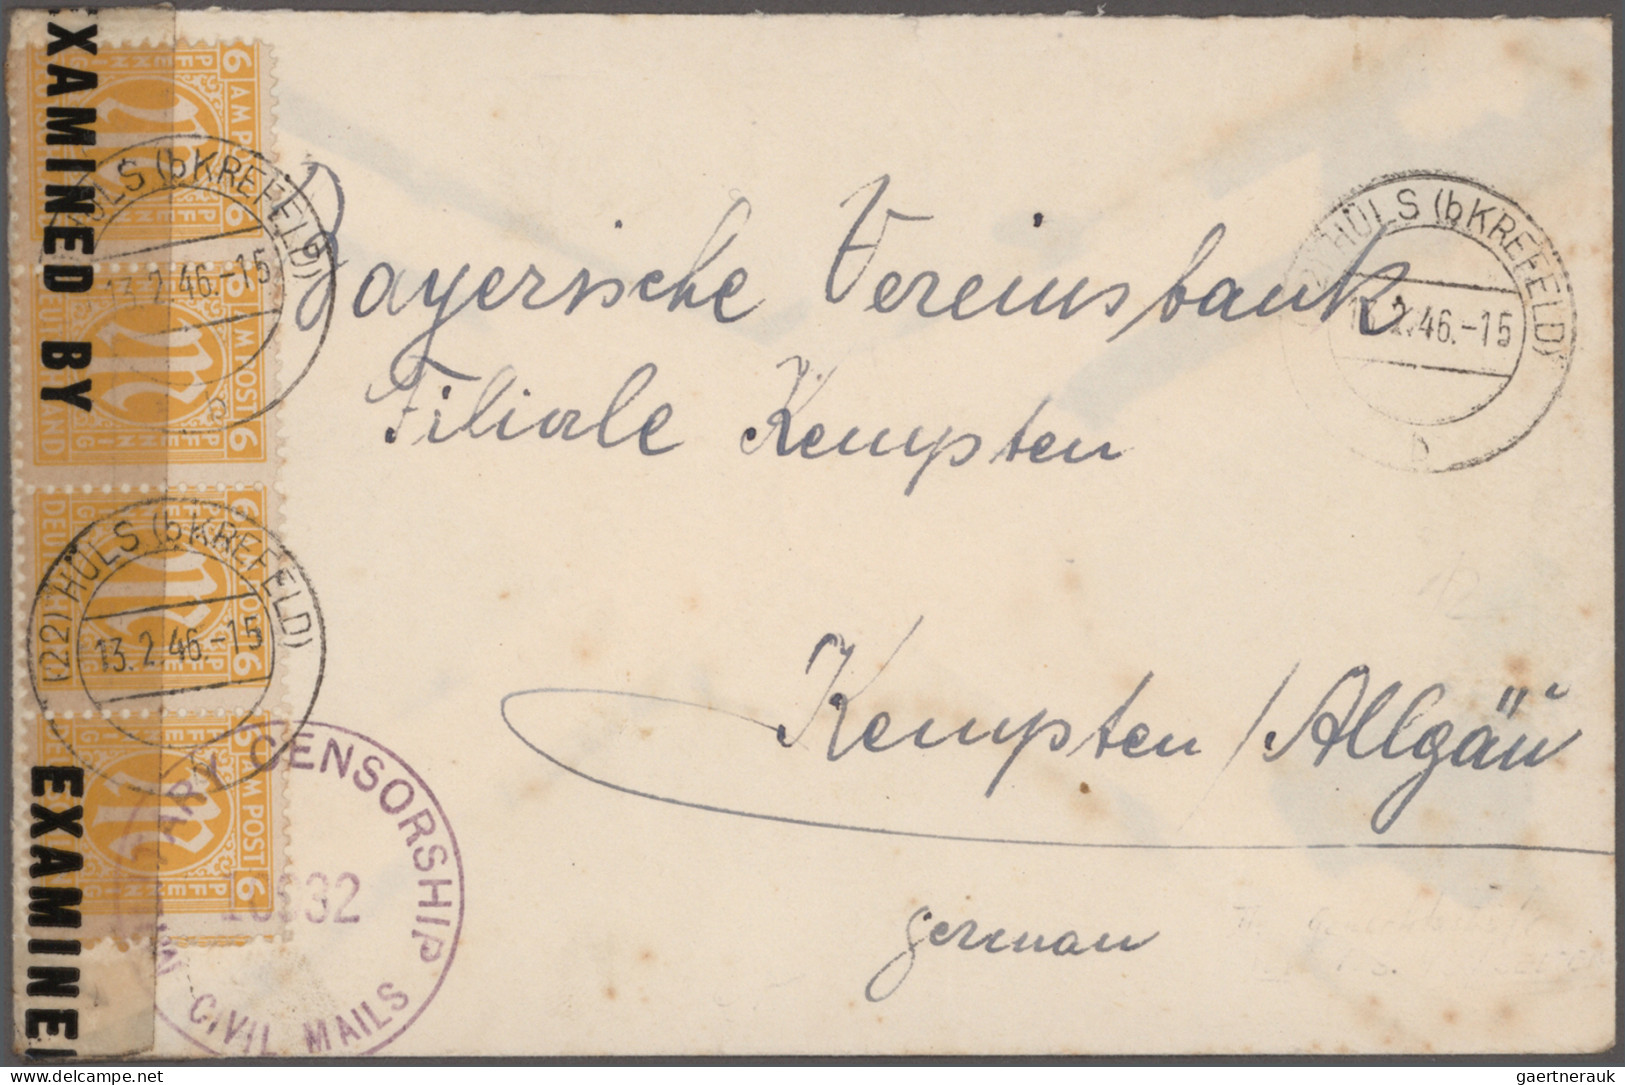 Bizone: 1945, umfangreiche Sammlung AM-Post mit vielen Briefen, Karten und Ganzs